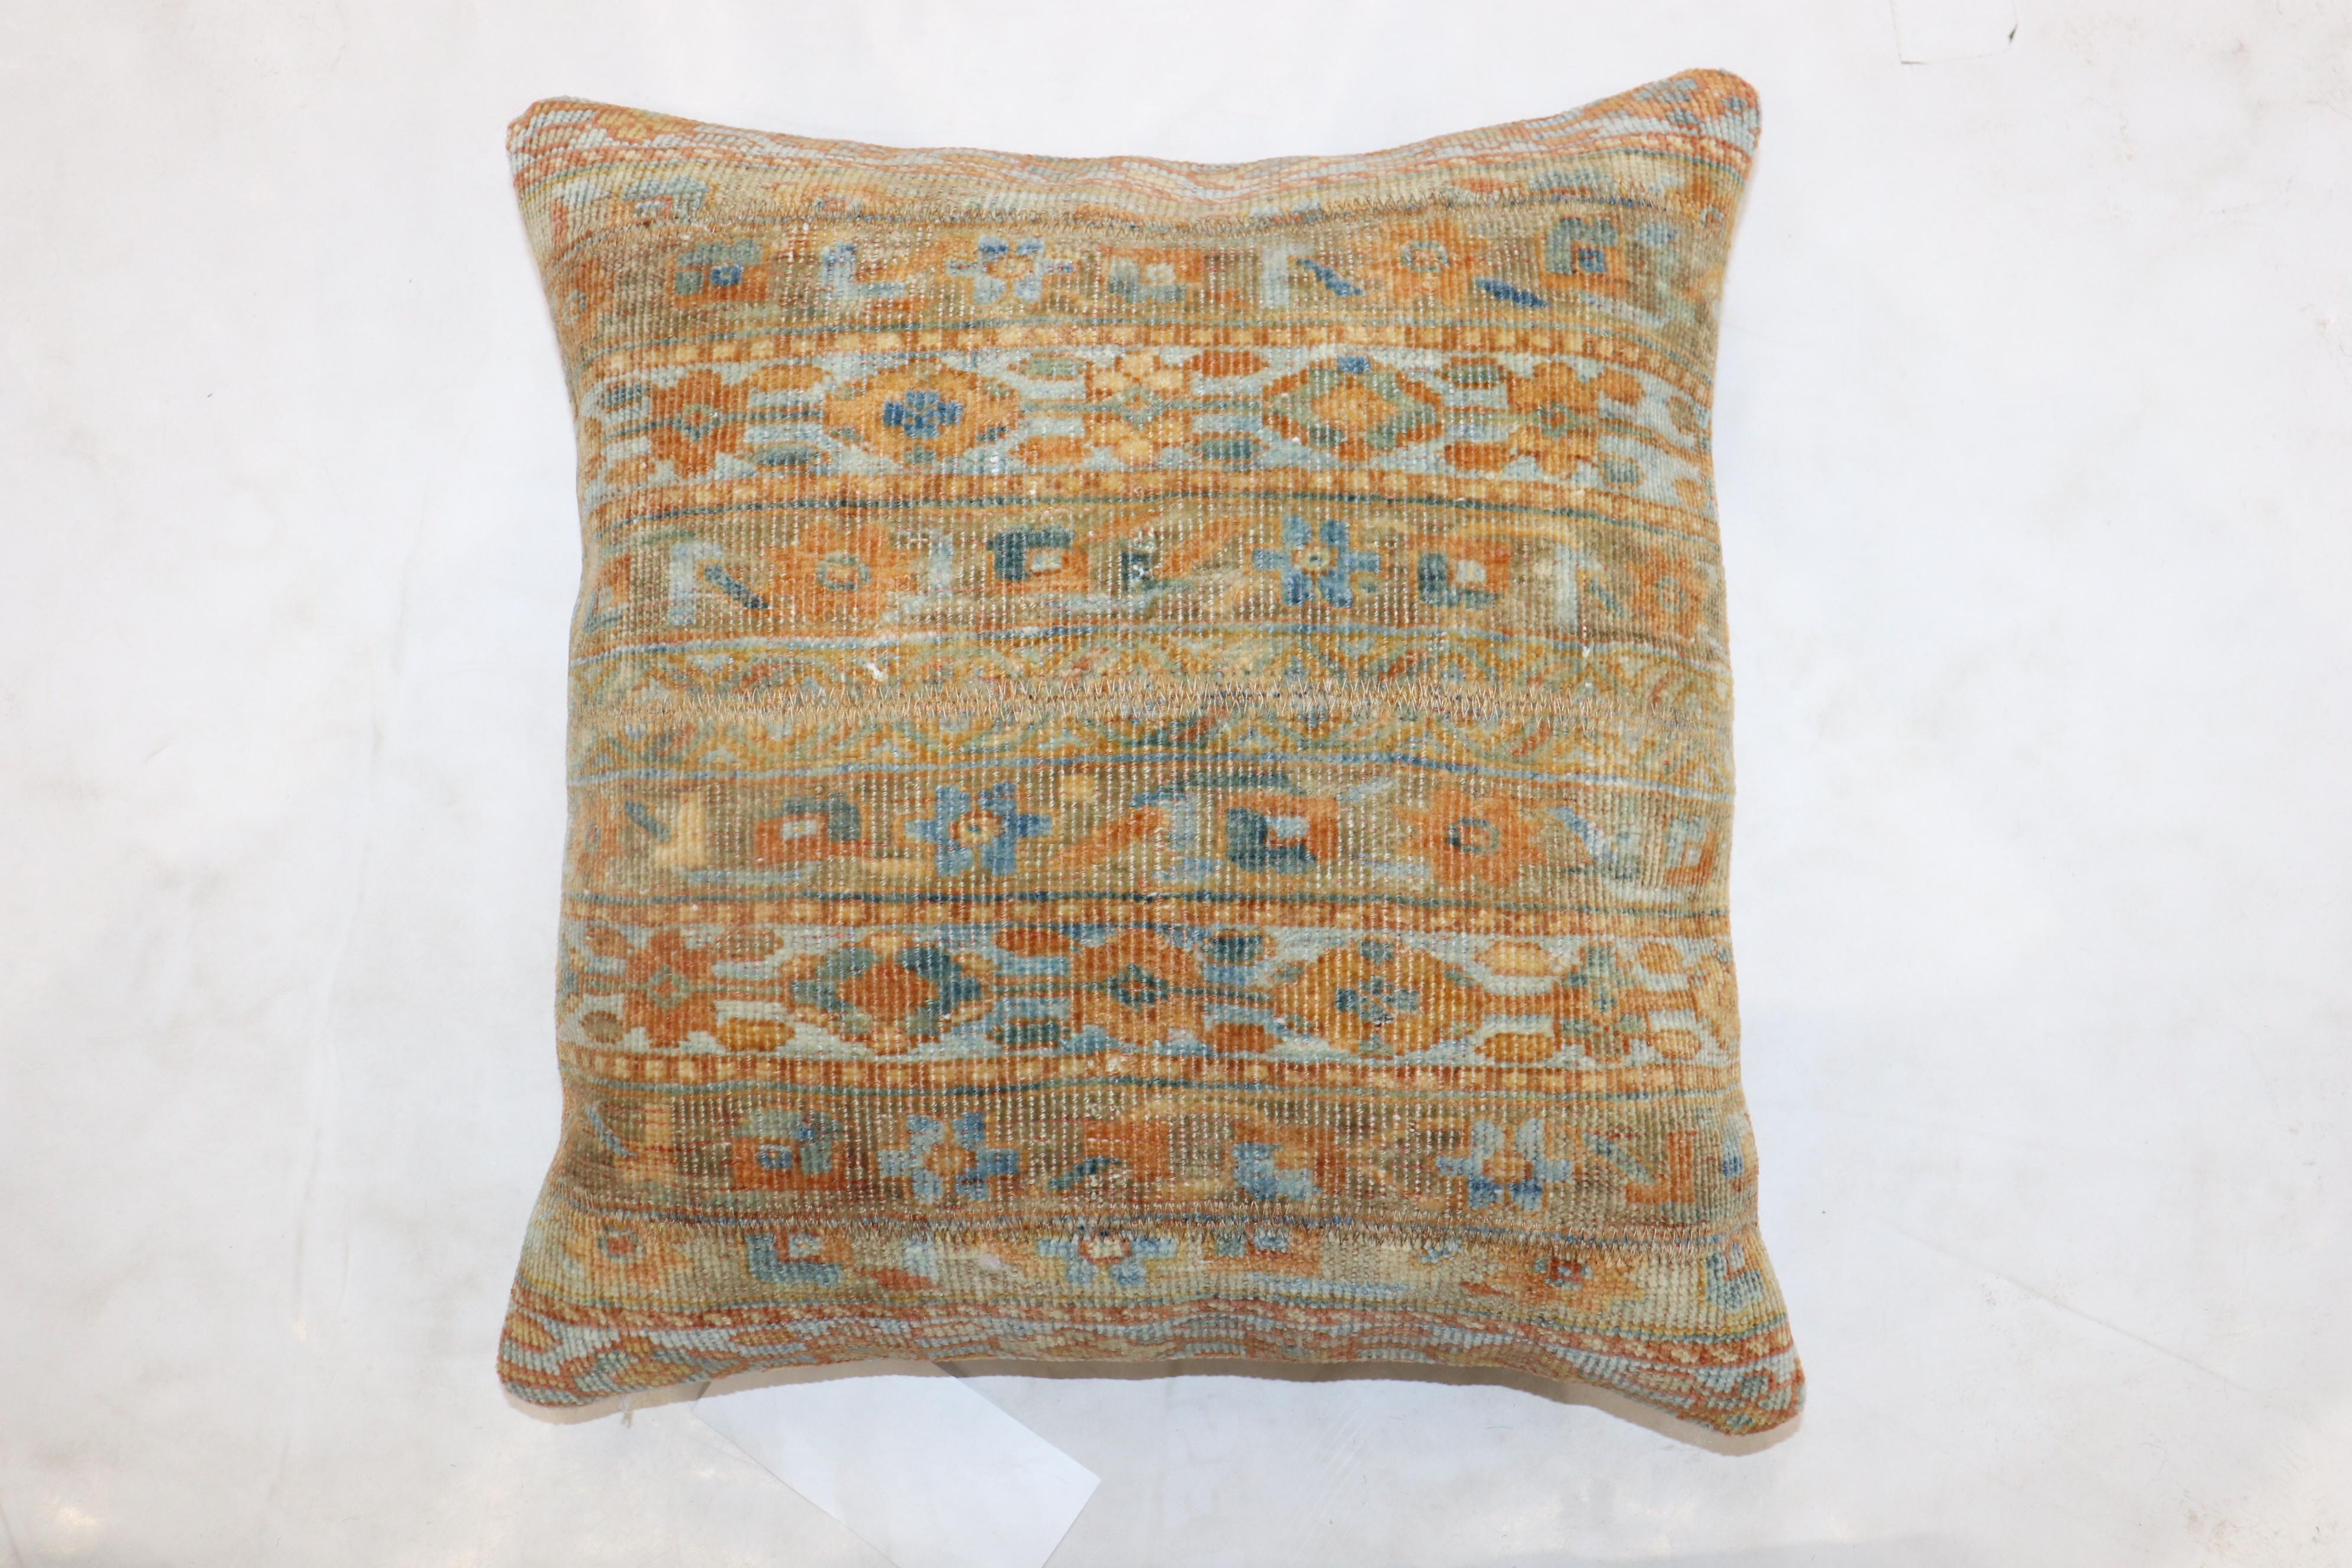 Kissen aus einem persischen Malayer-Teppich mit hellblauen und orangefarbenen Akzenten.

Maße: 17